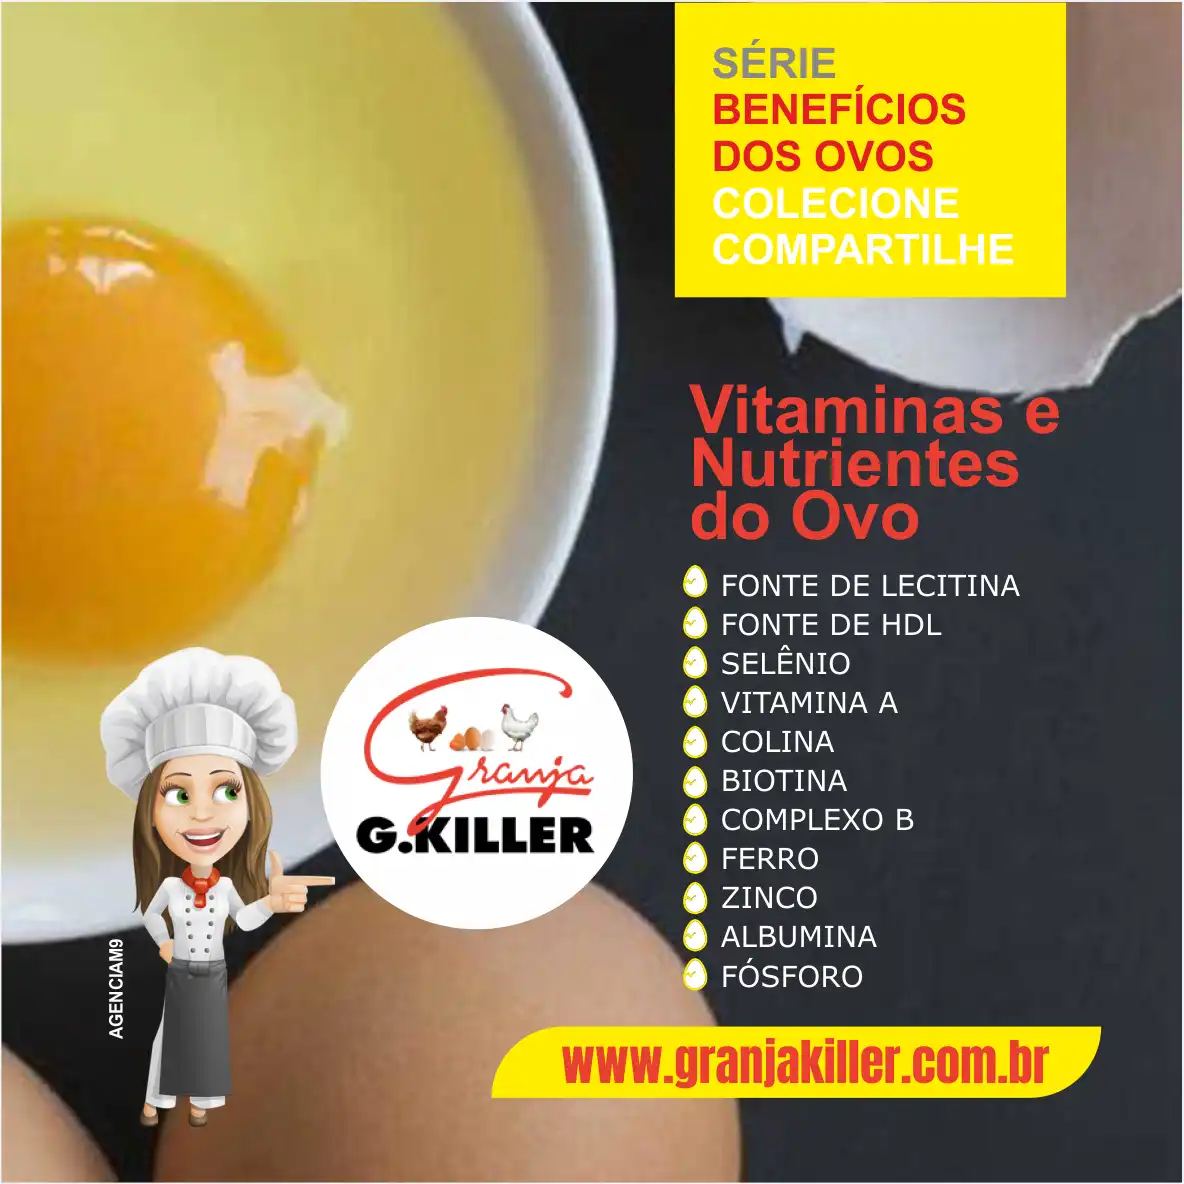 
Propaganda Benefícios do Ovo Vitaminas e Nutrientes presente no Ovo



